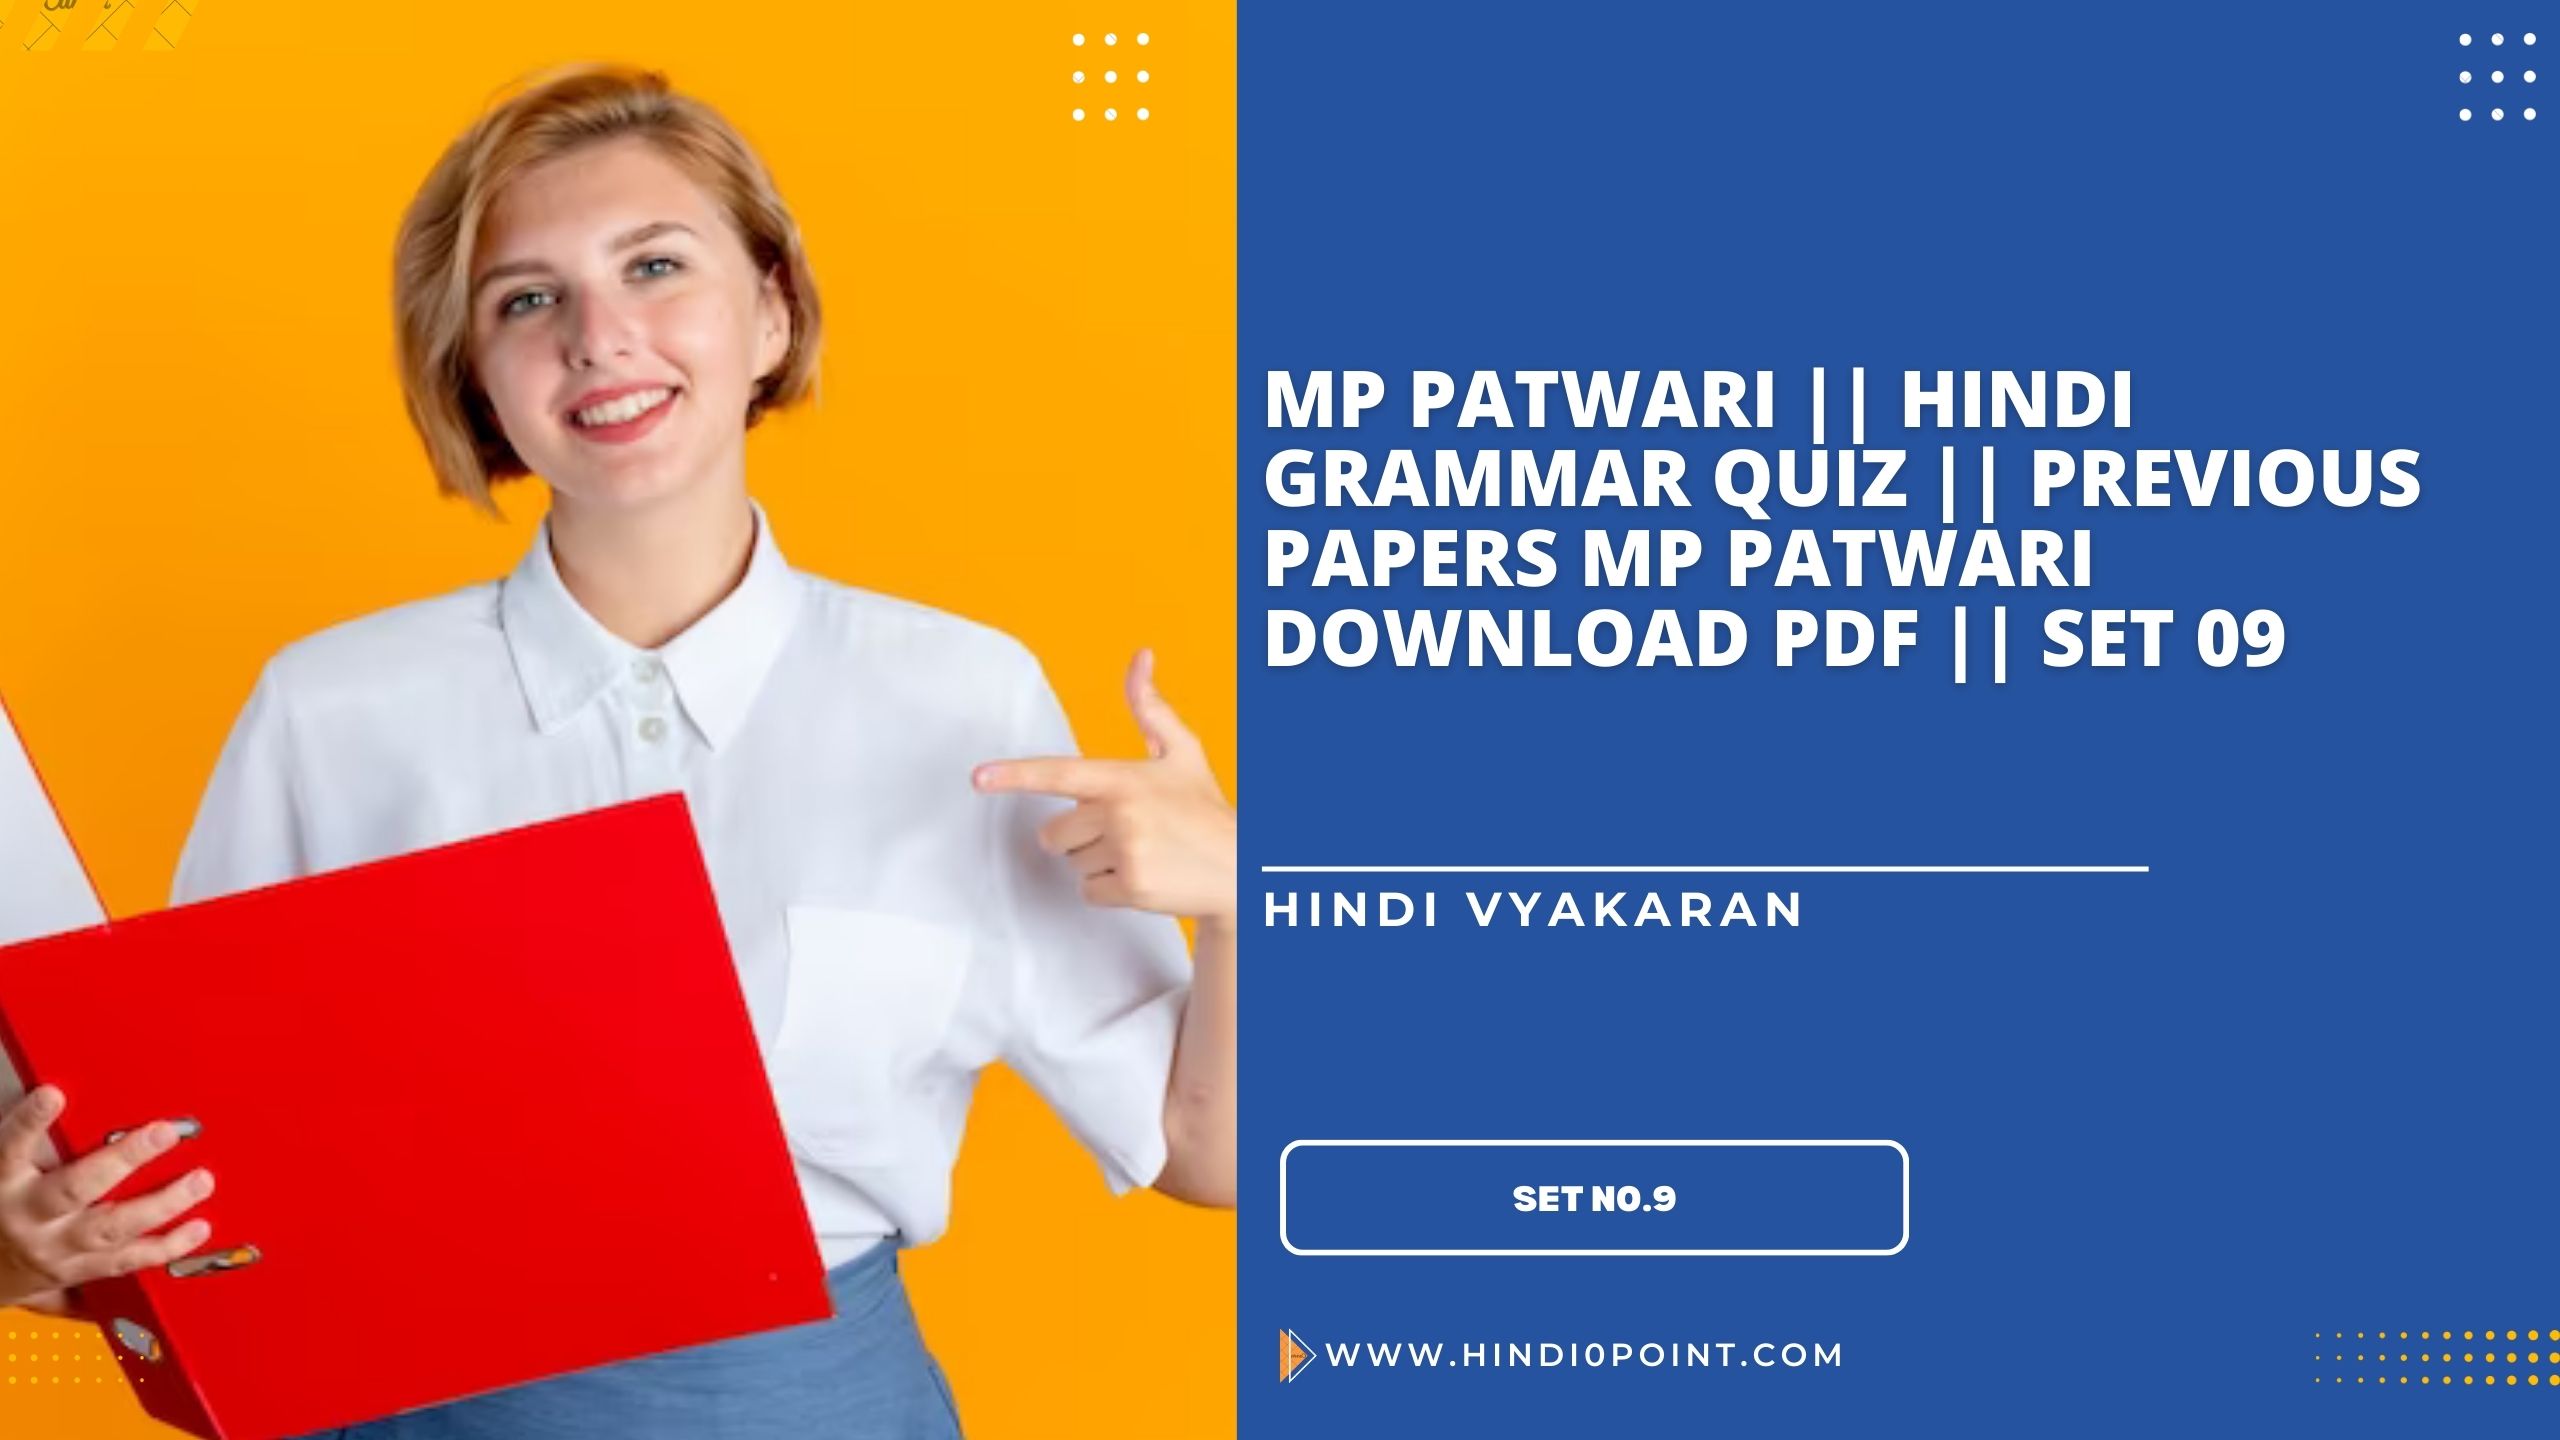 Mp patwari || hindi grammar quiz || previous papers mp patwari download pdf